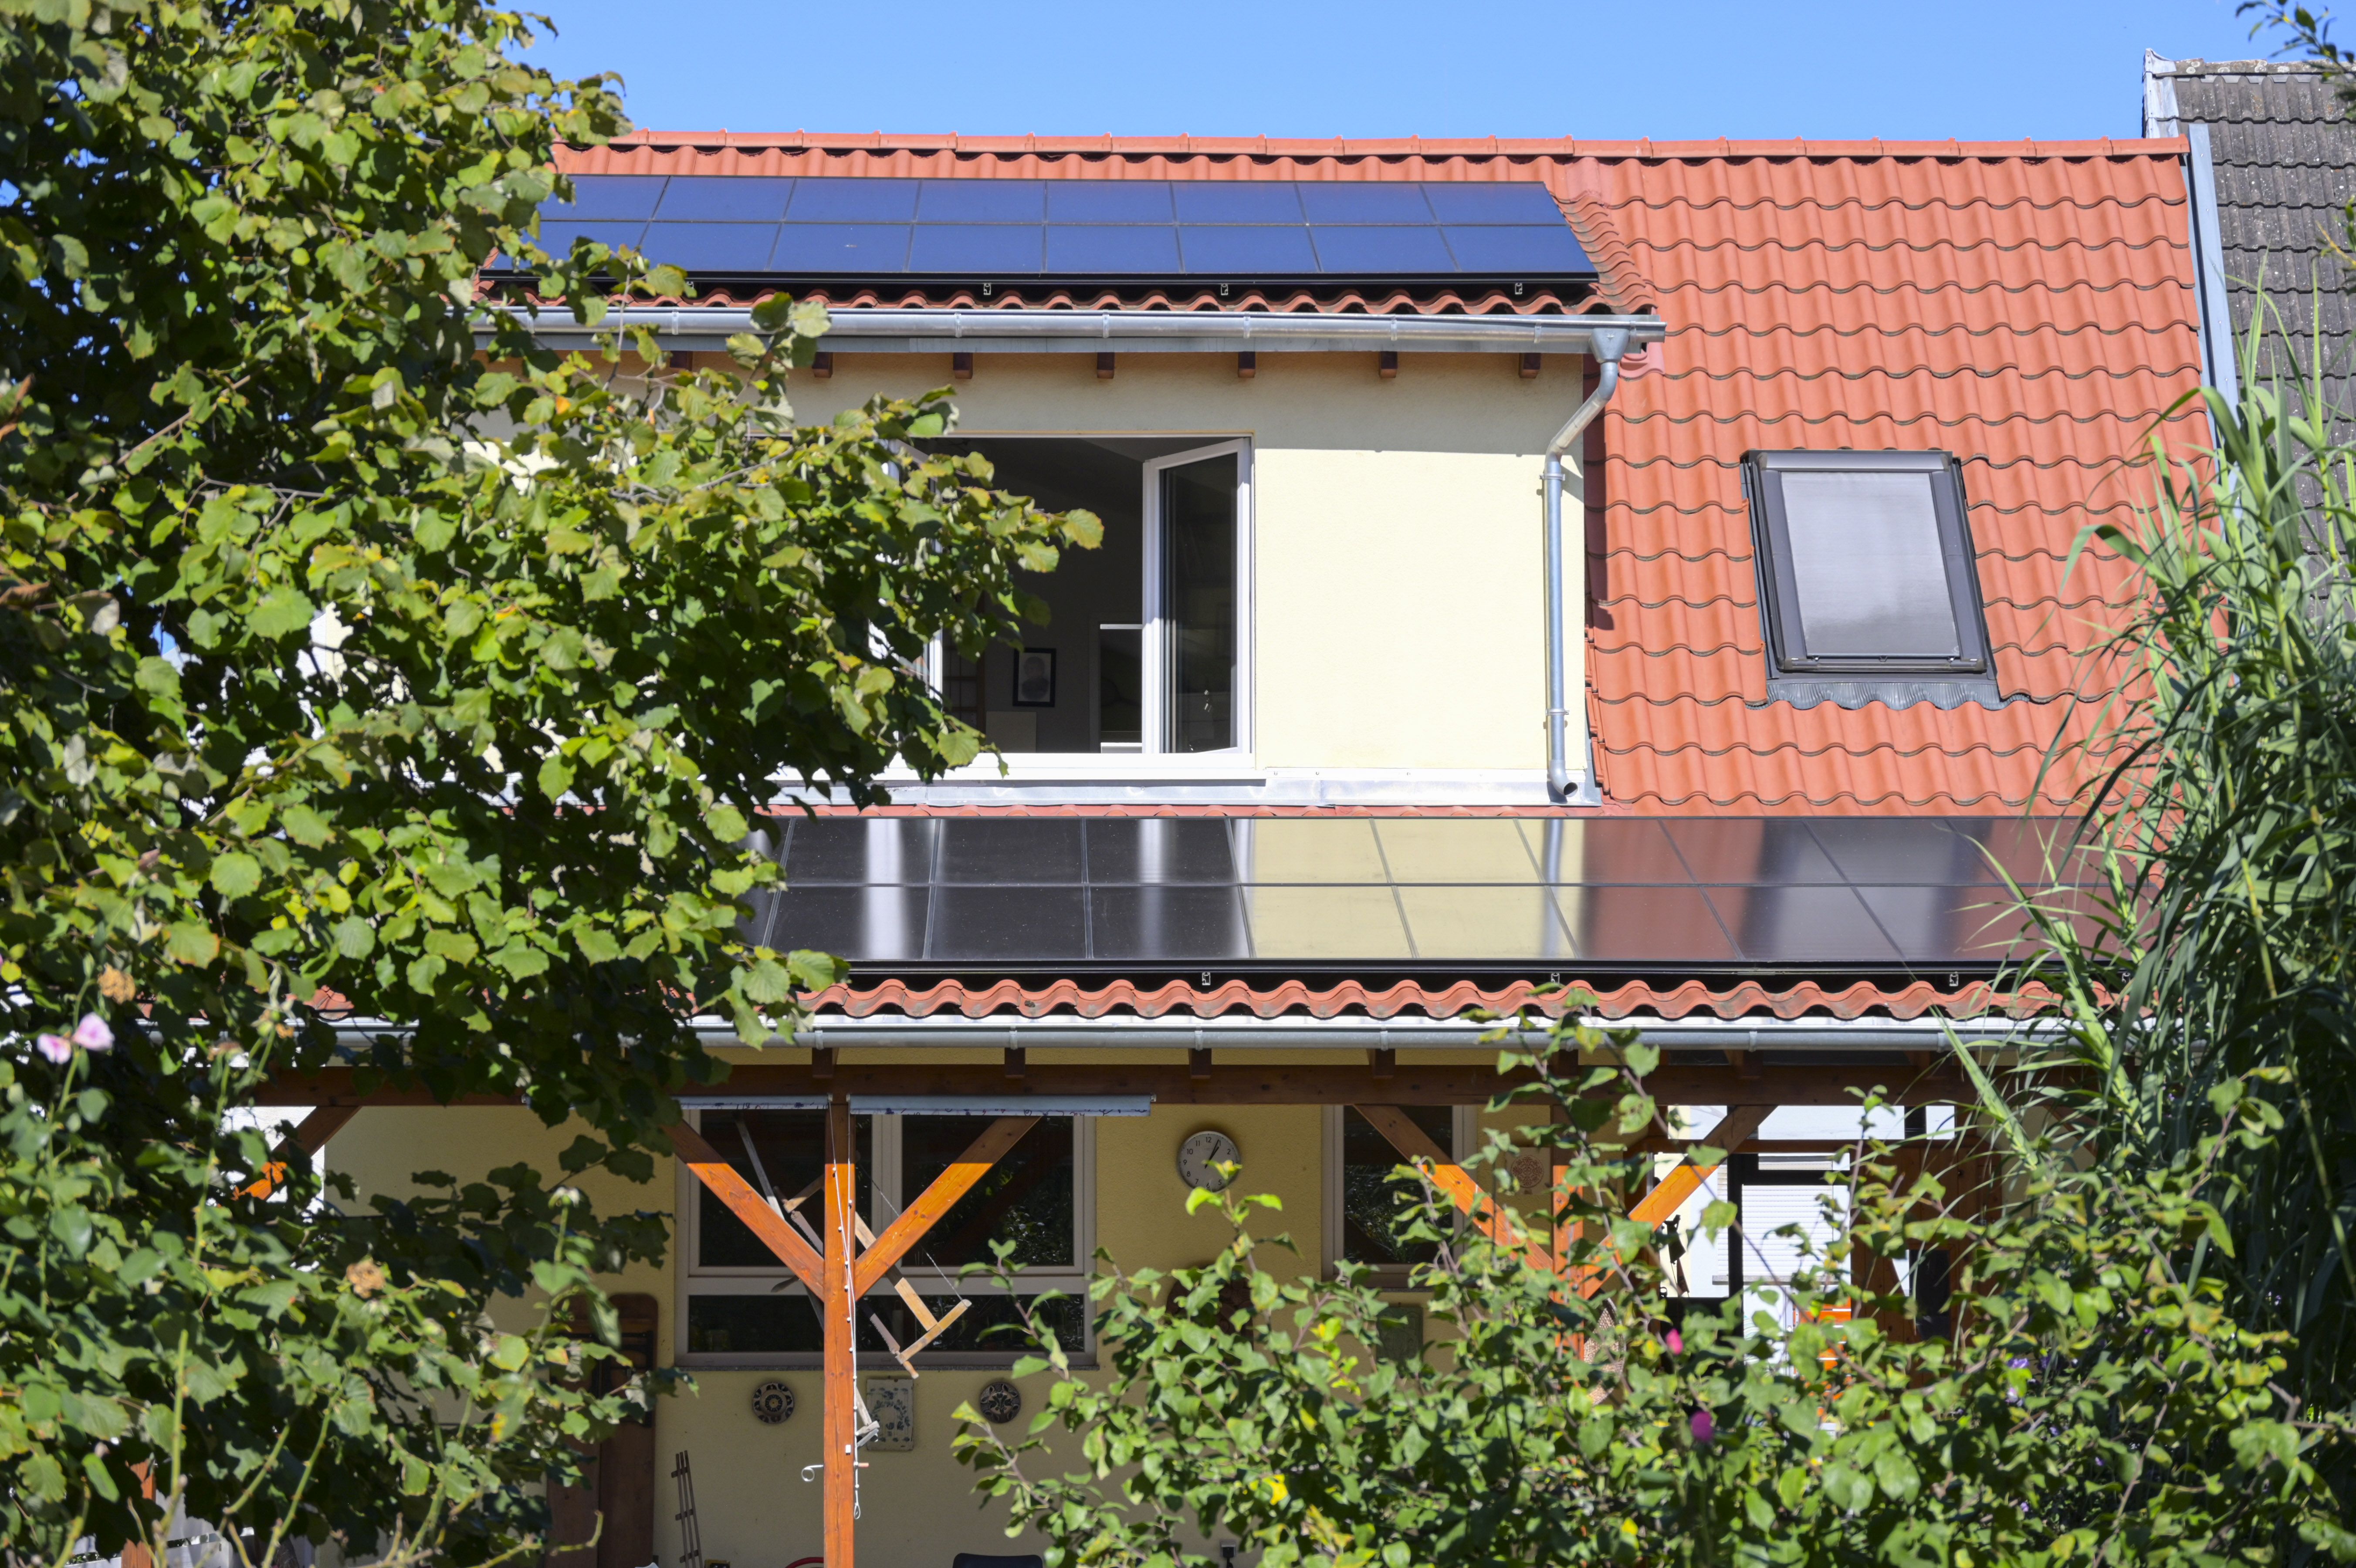 
    
            
                    Ein 120 Jahre altes umfassend saniertes Haus in Plankstadt – erneutes Dach und Außenwände gedämmt, neue dreifachverglaste Fenster und eine Photovoltaik-Anlage mit insgesamt 9,9 kWp starken Leistung
                
        
